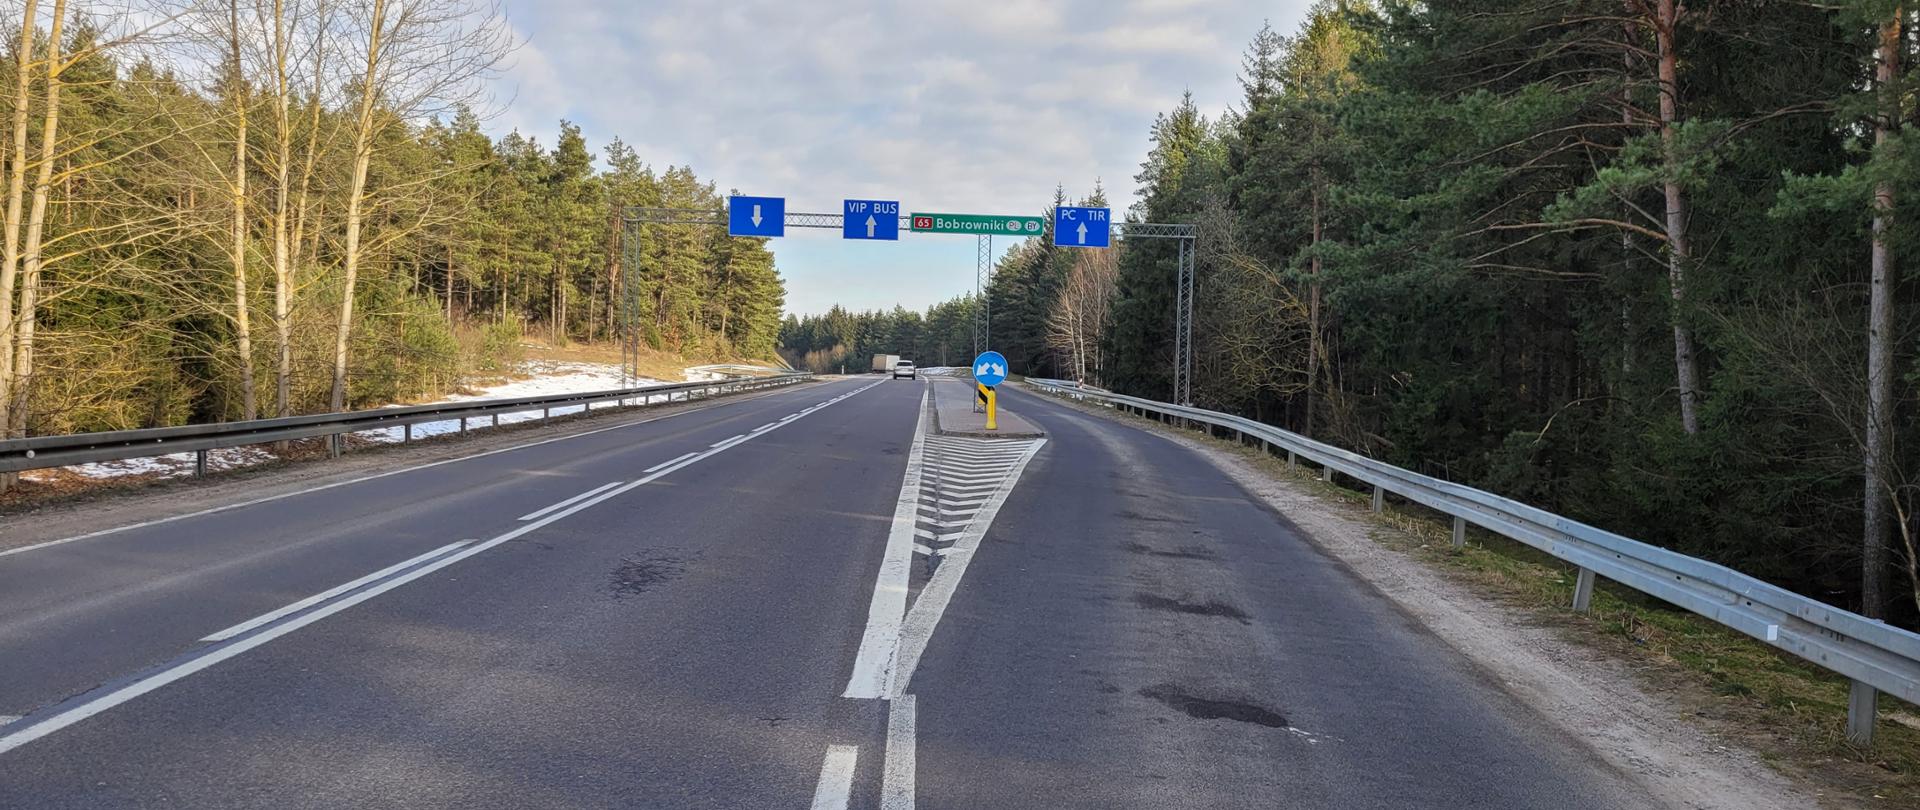 Droga prowadząca do przejścia granicznego w Bobrownikach.
W oddali widoczne pojazdy, znaki kierunkowe nad drogą.